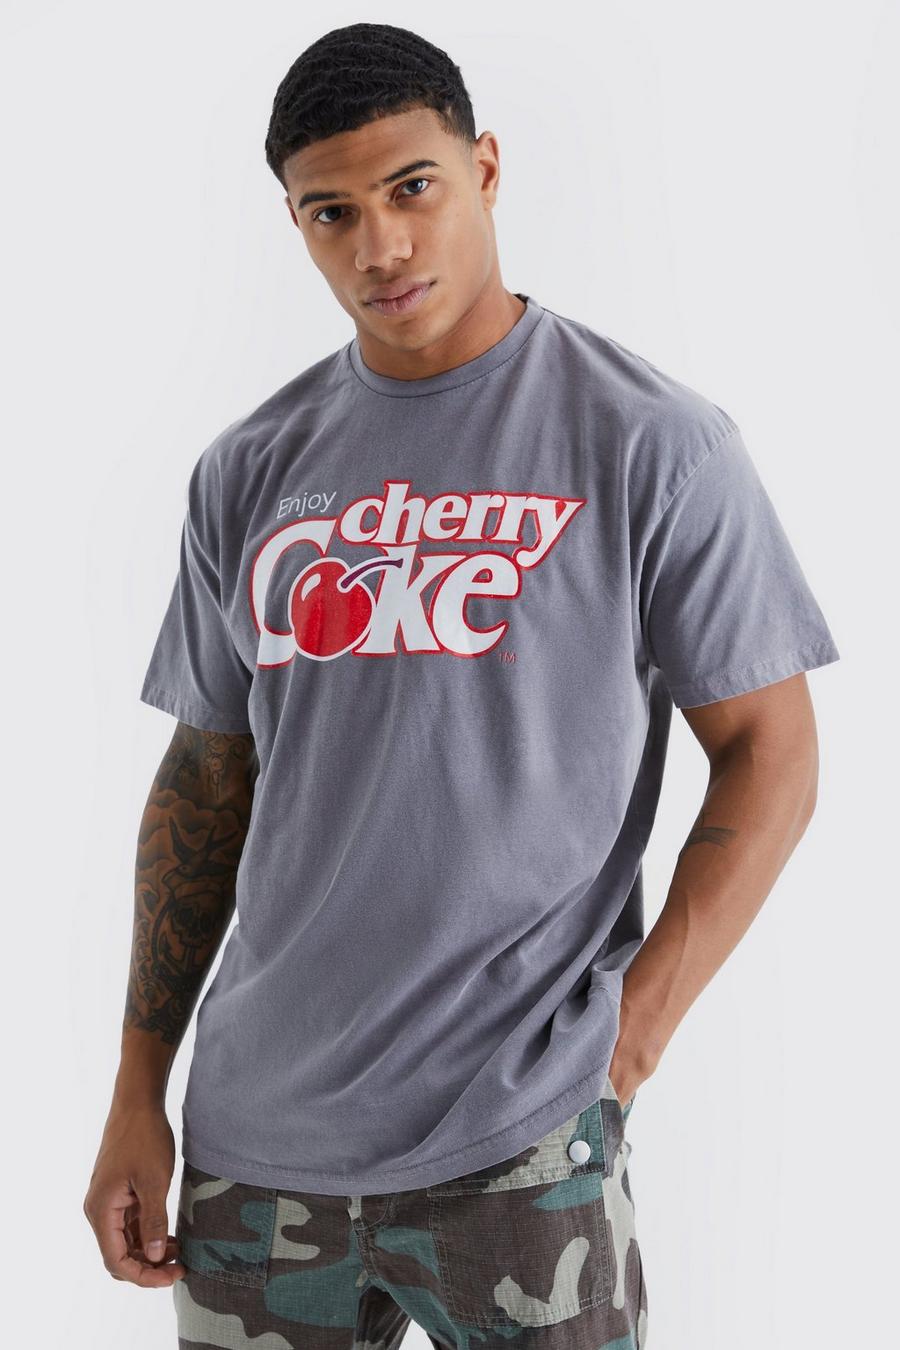 T-shirt oversize ufficiale in lavaggio Cherry Coca Cola, Charcoal